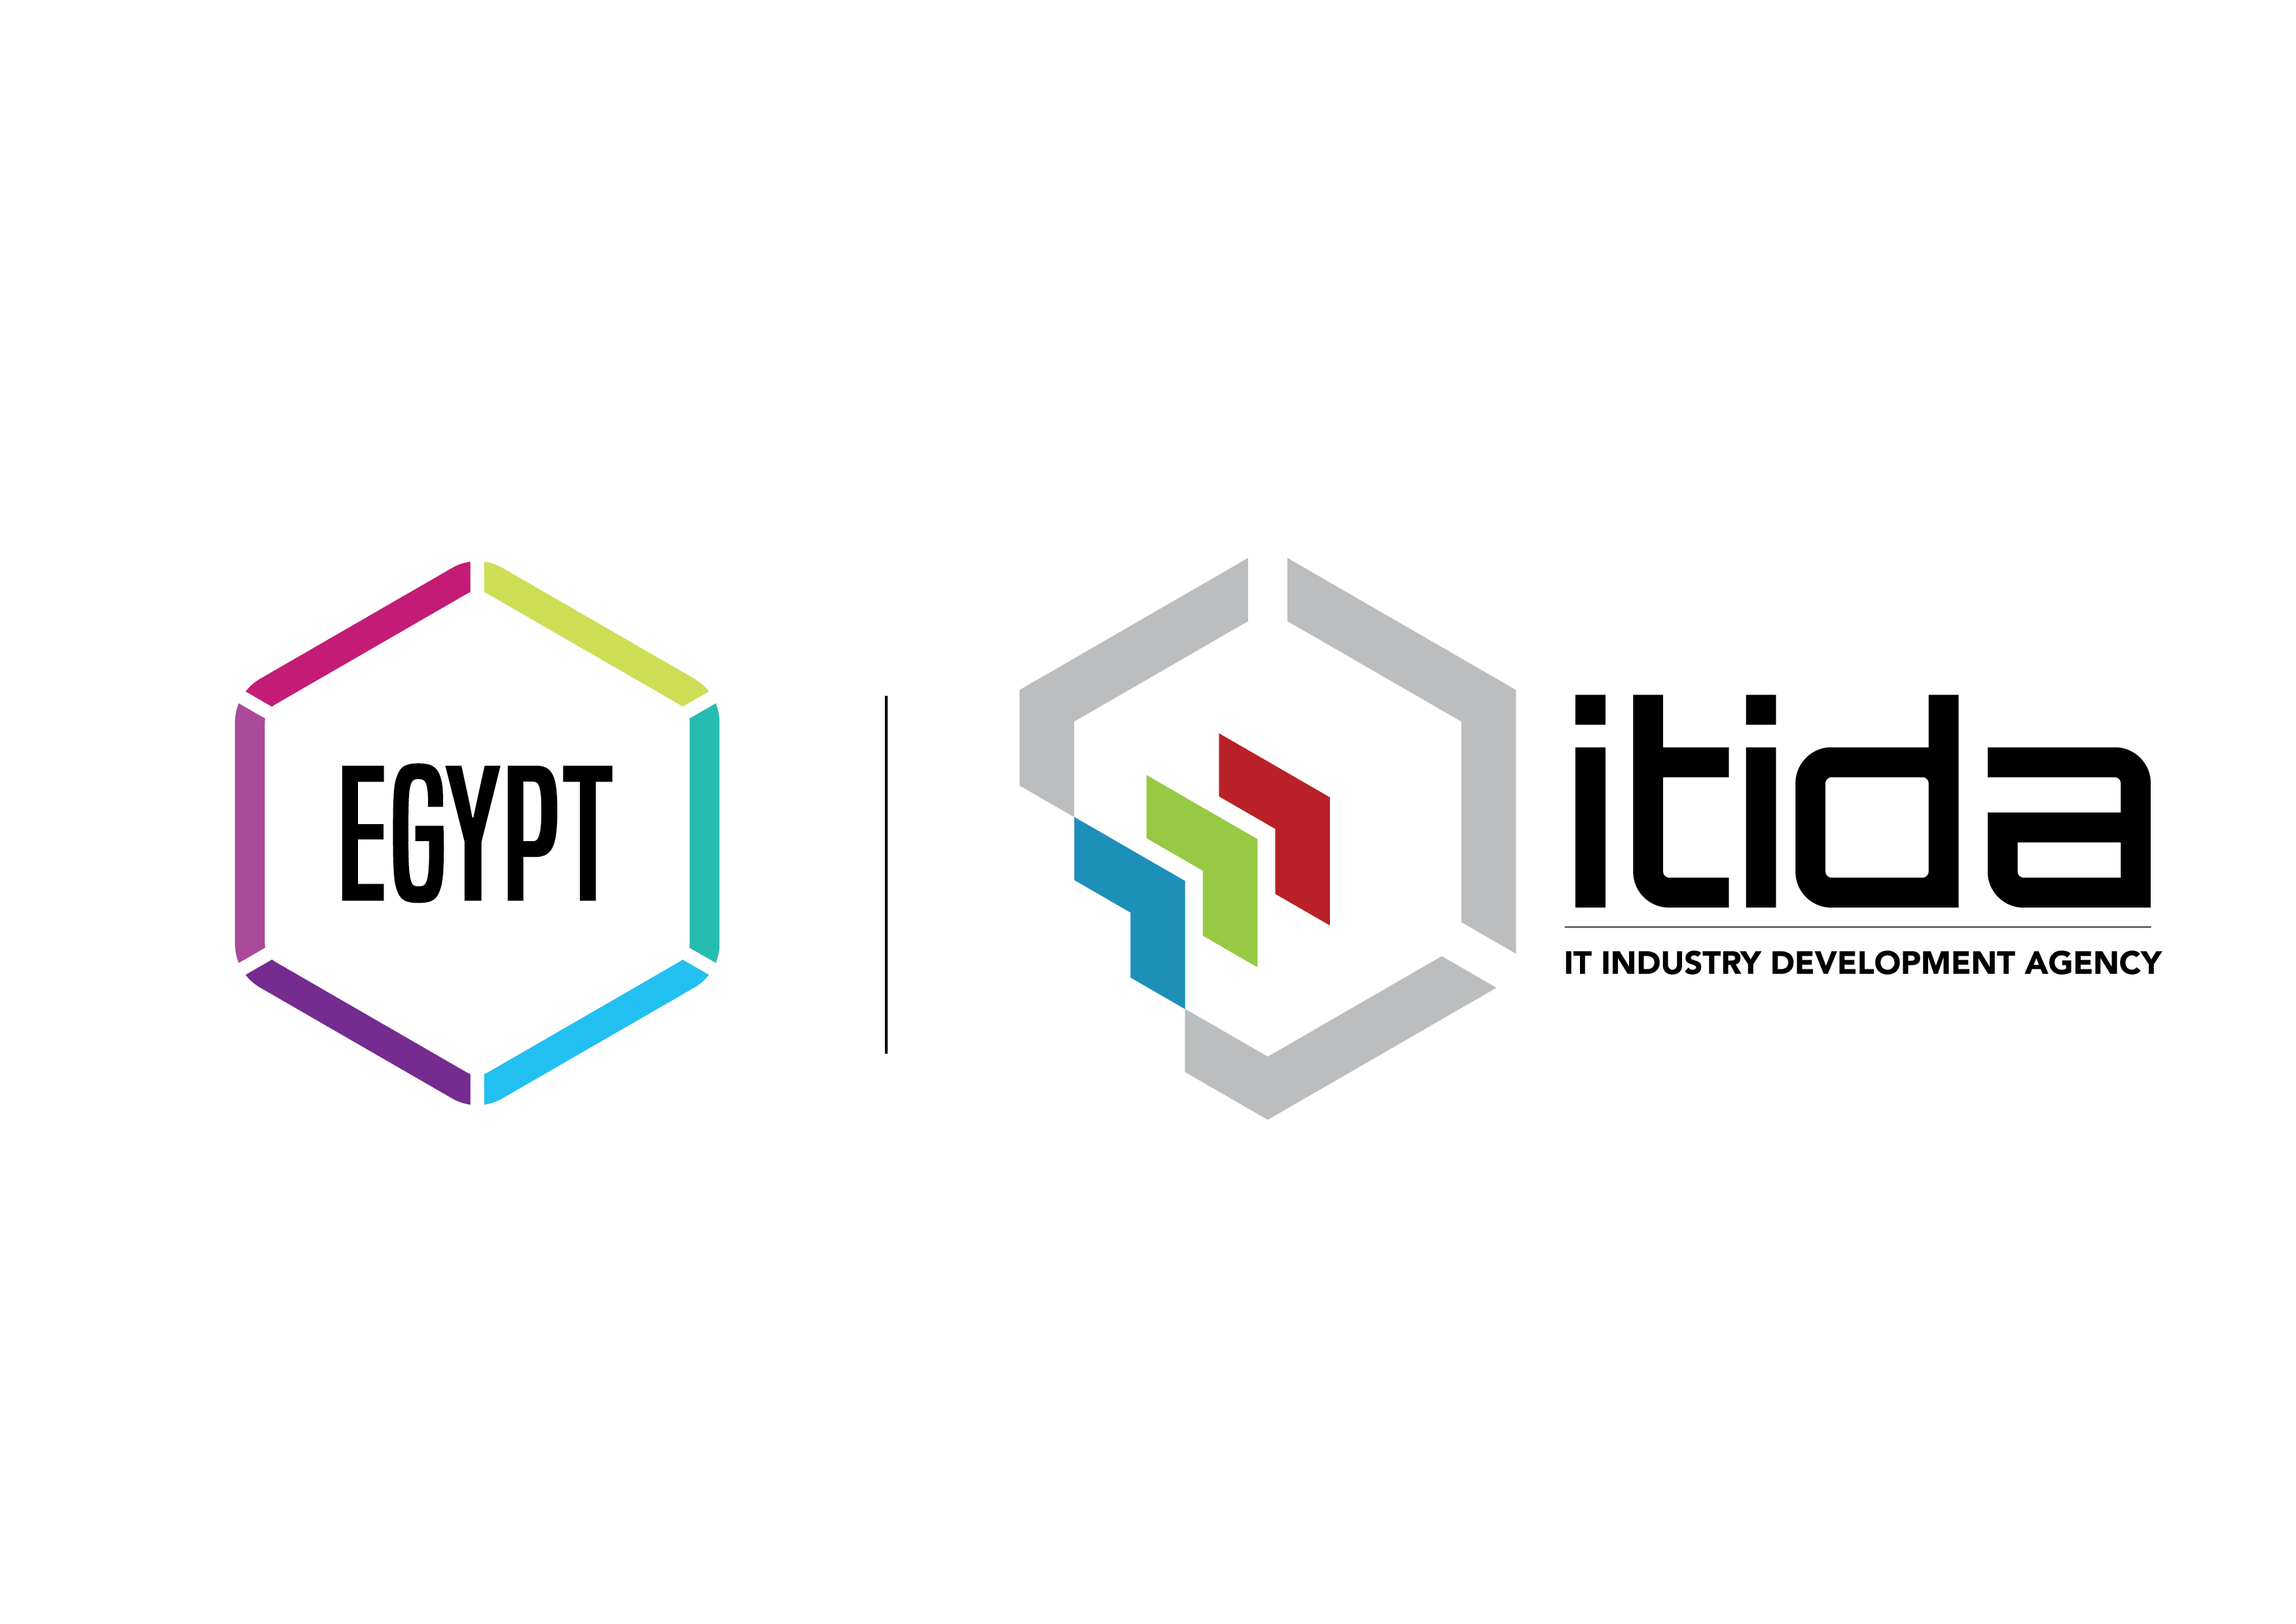 EGYPT – Regional Business & IT Powerhouse